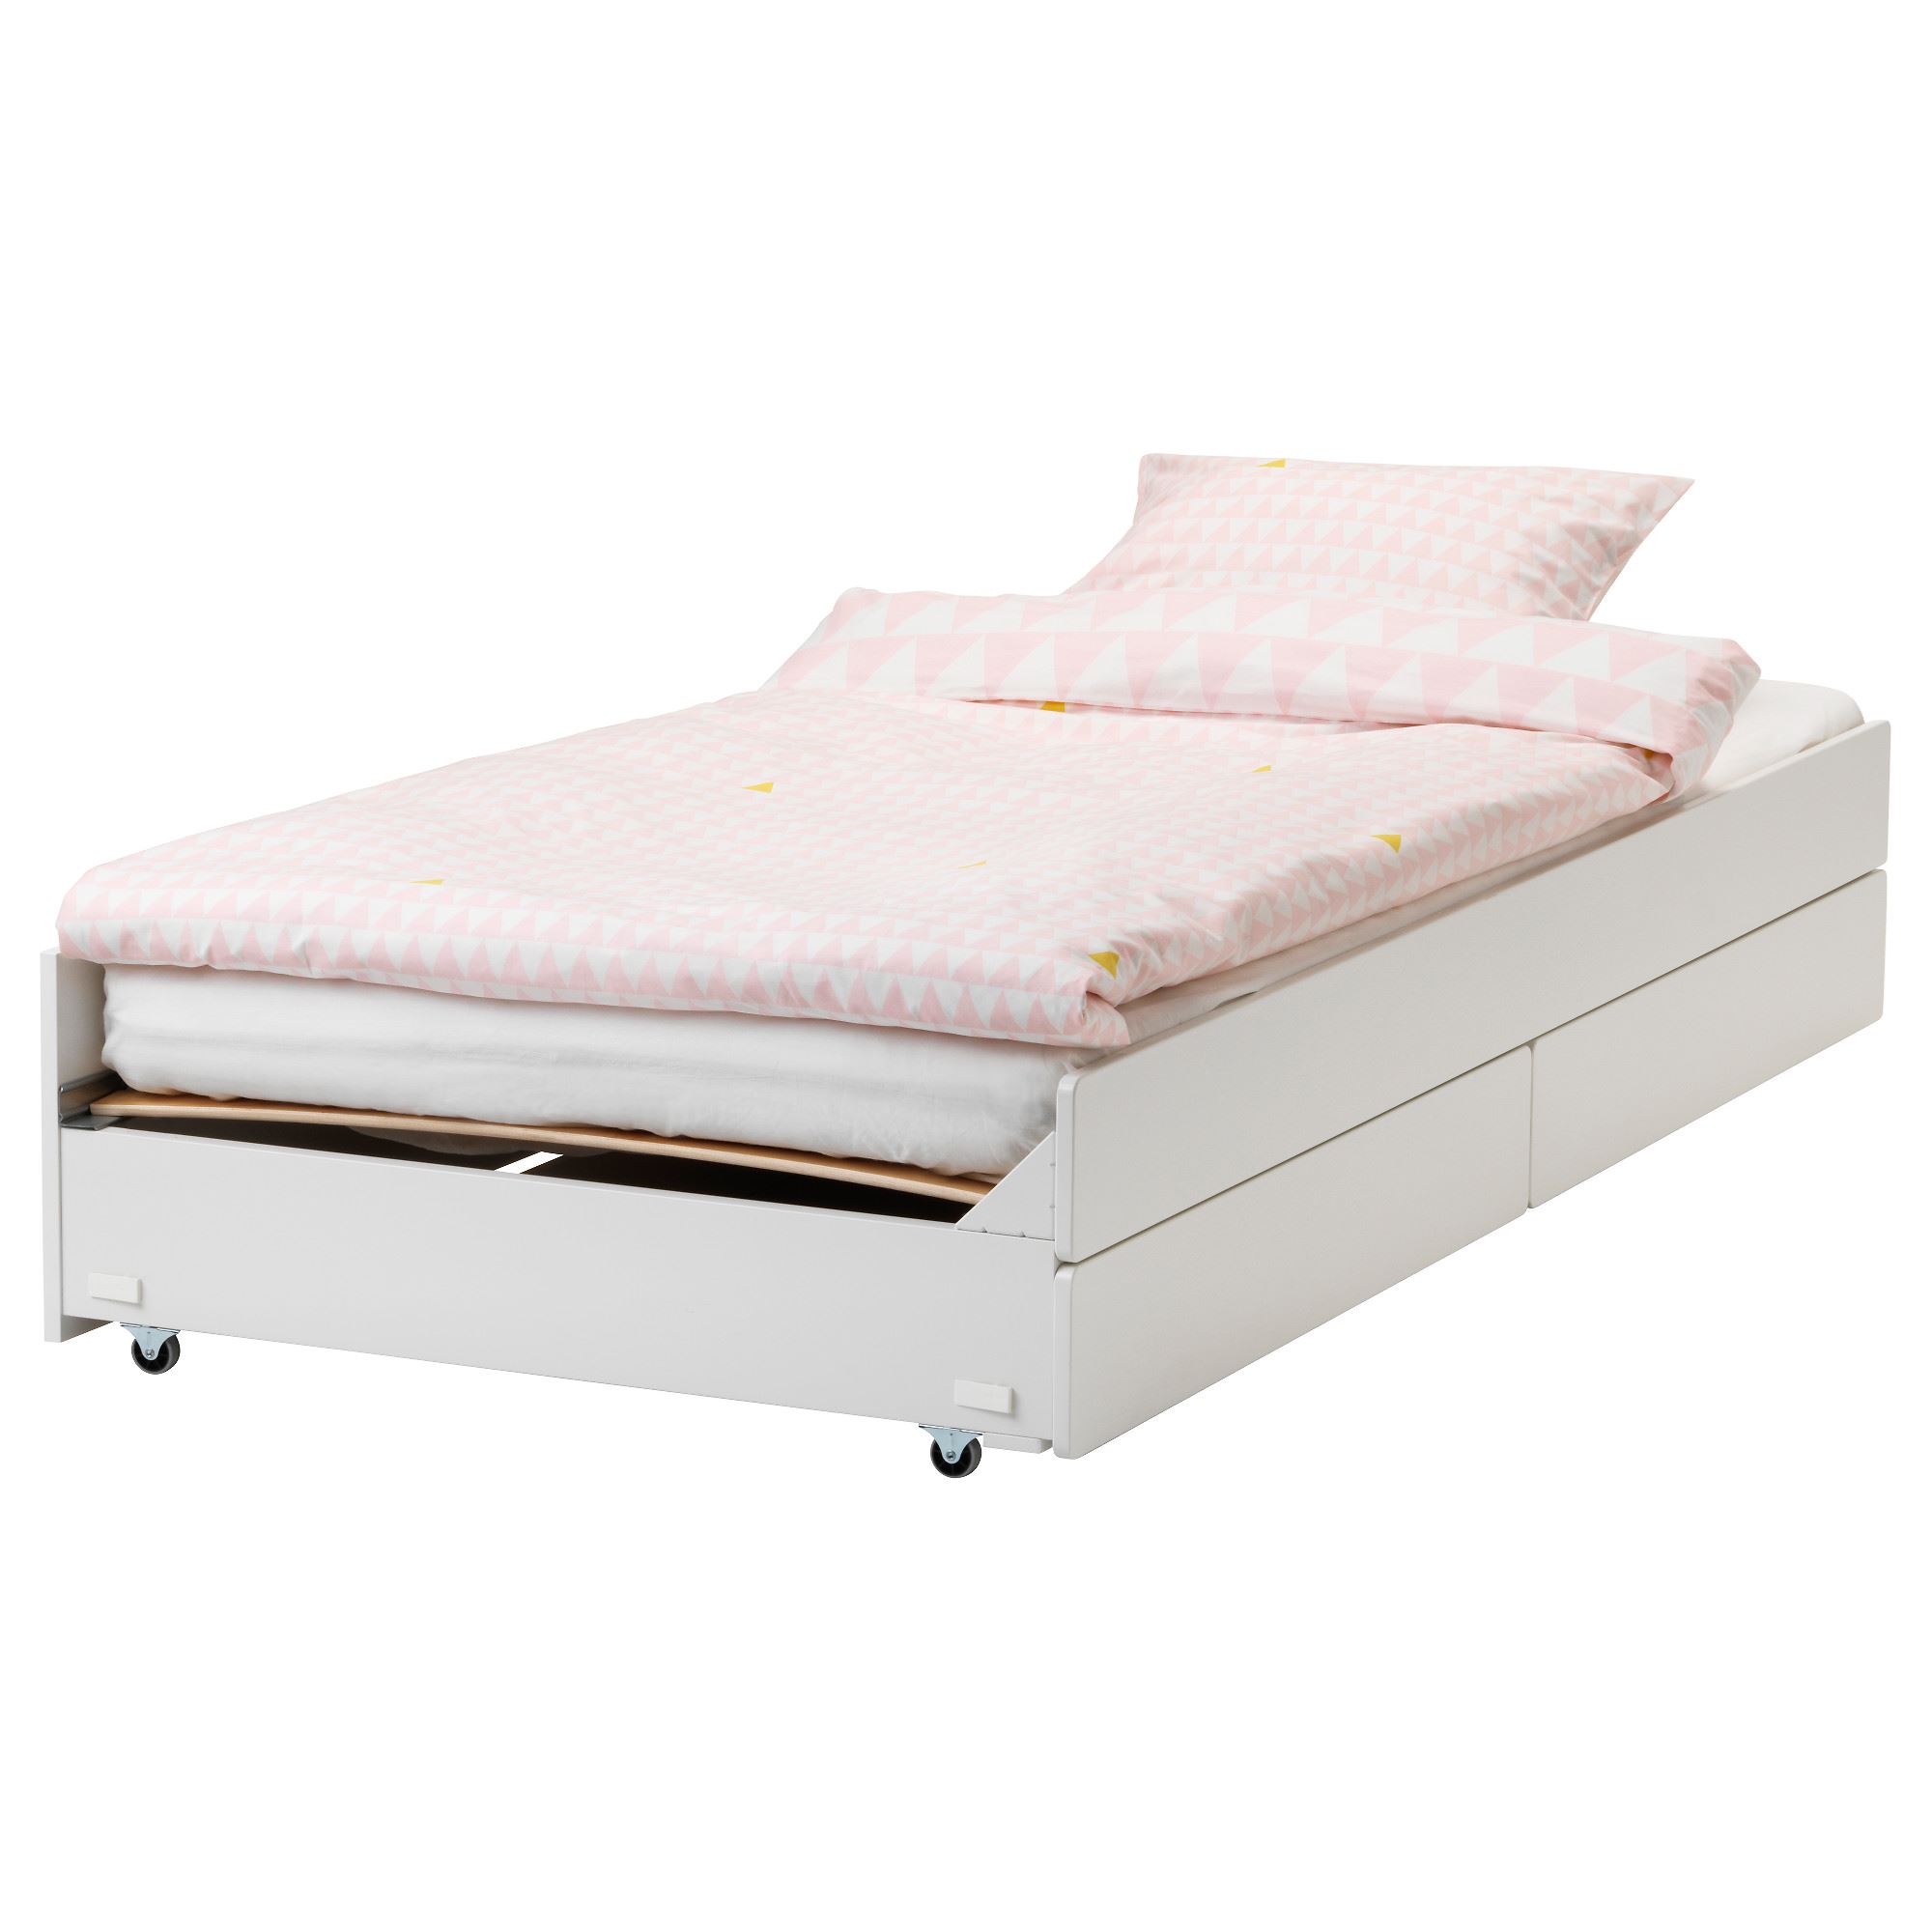 SLAKT/LURÖY ek yatak, beyaz, 90x200 cm